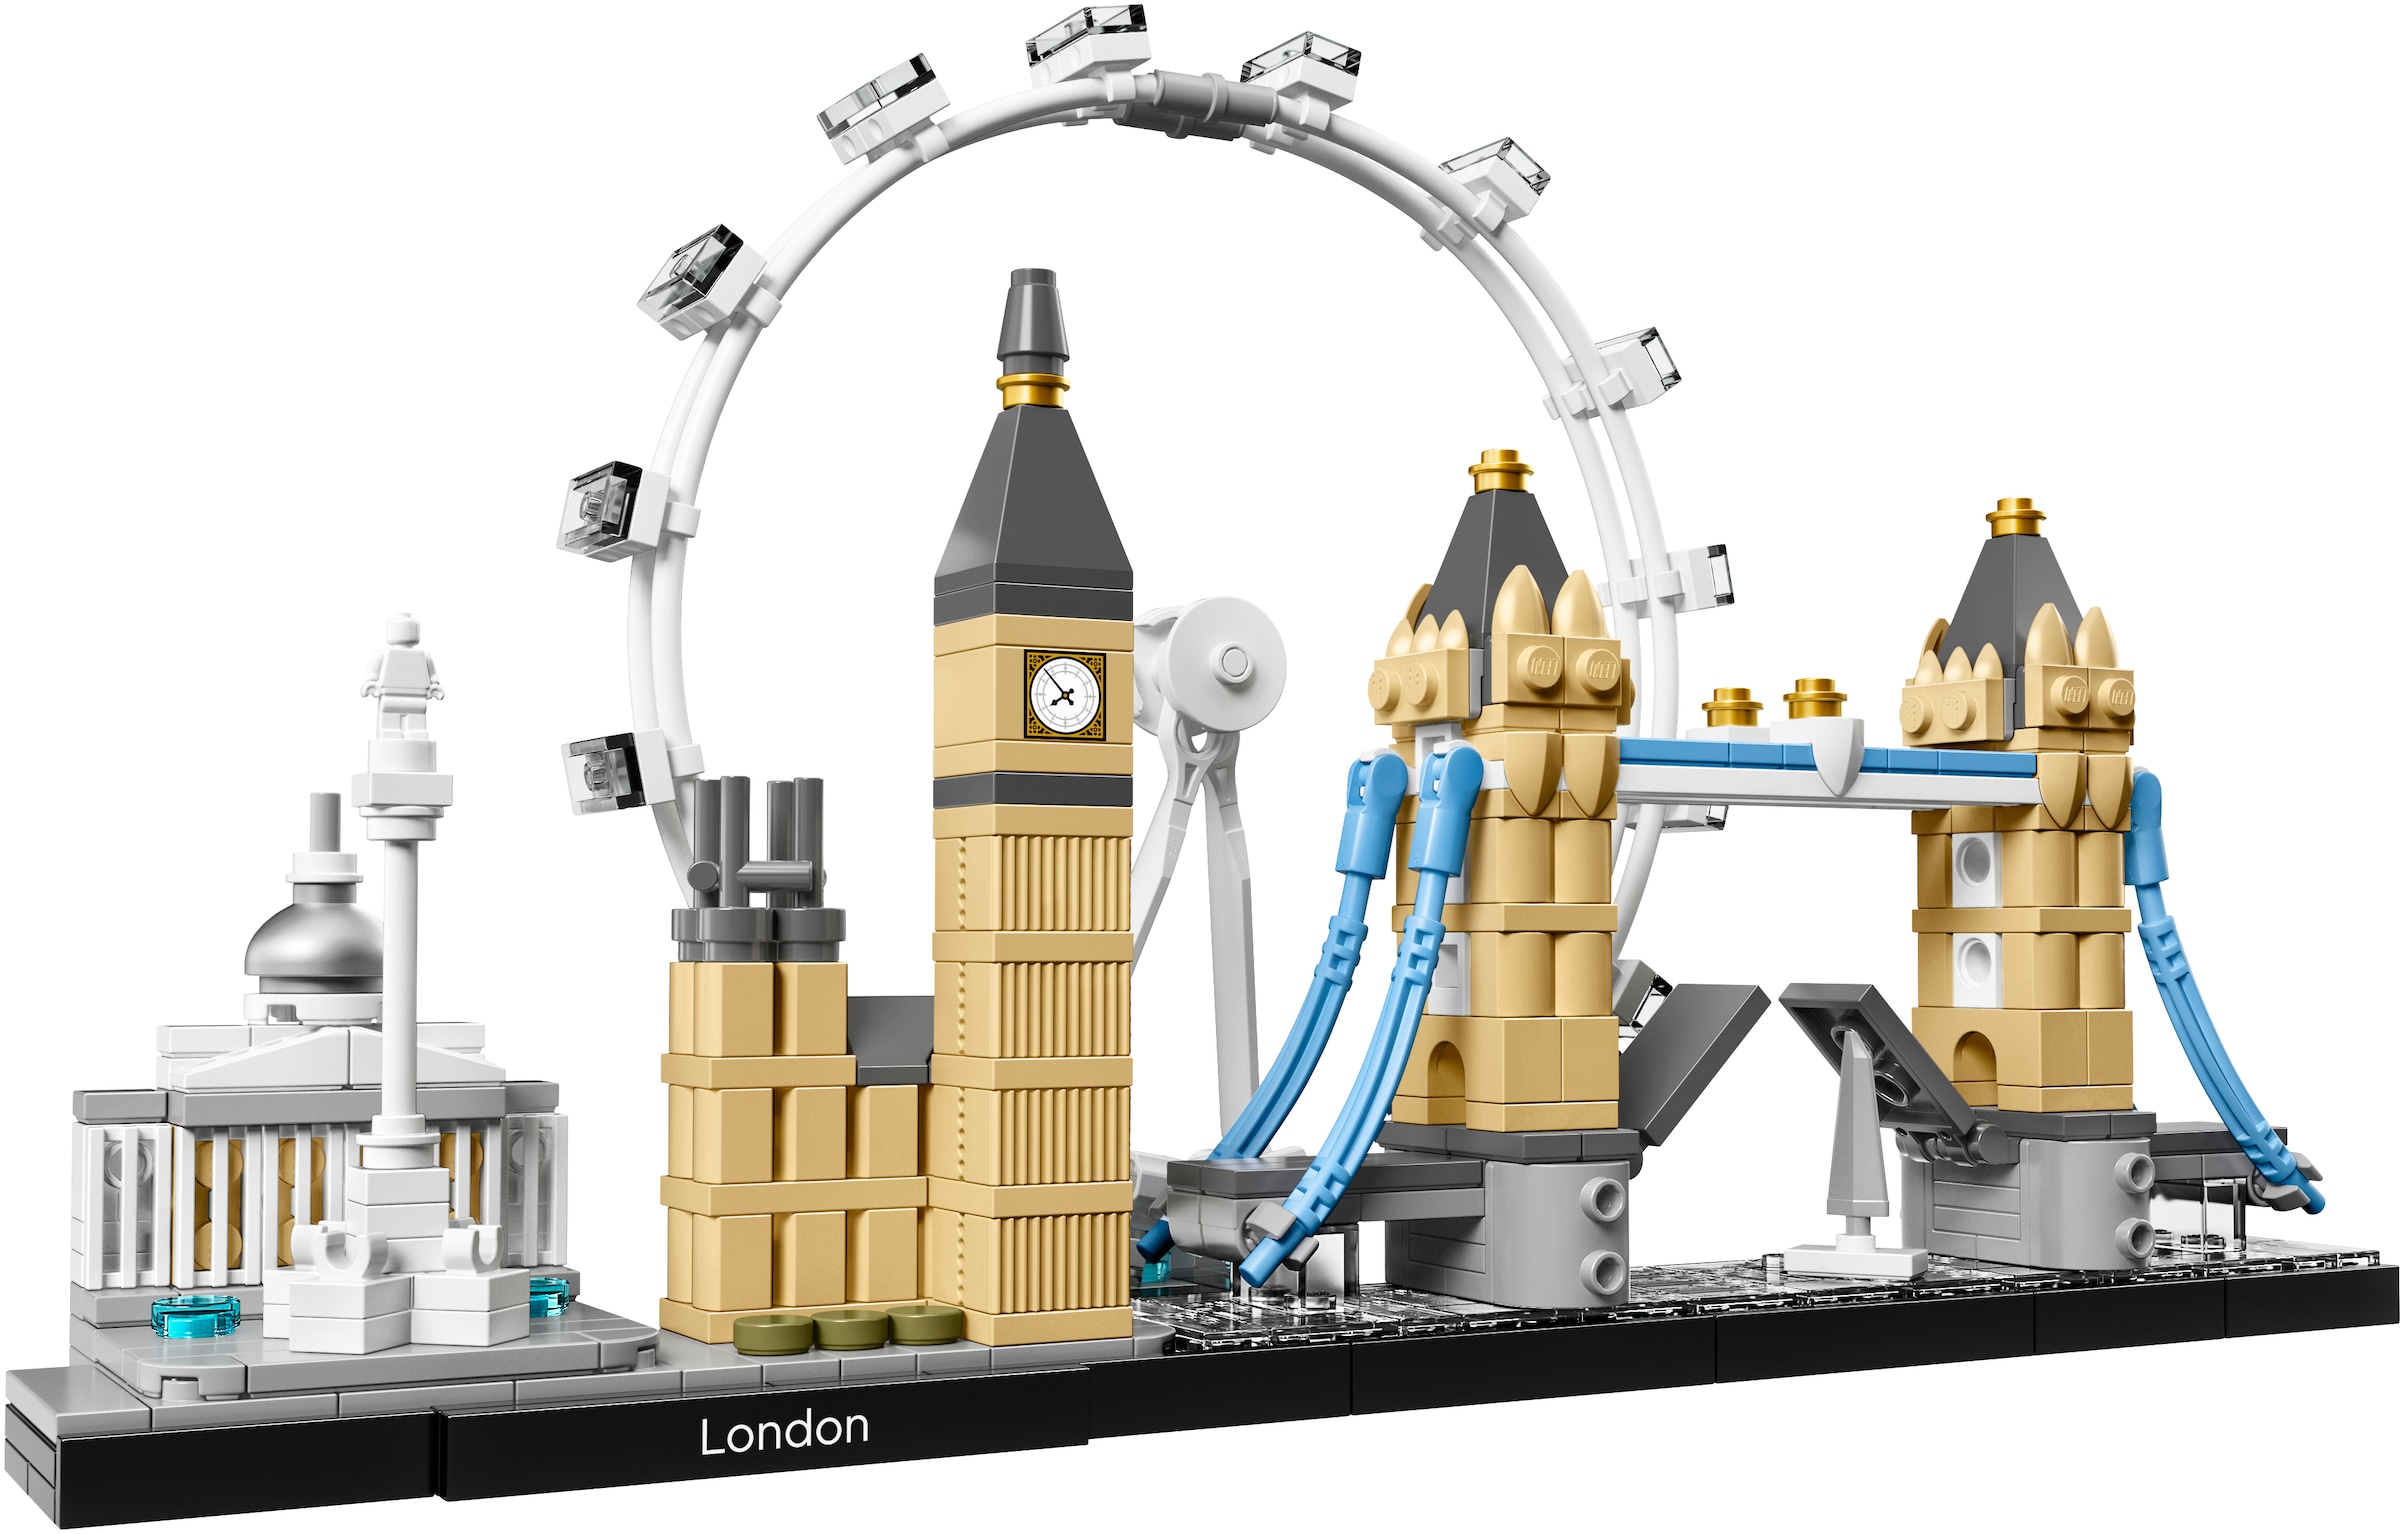 LEGO® Konstruktionsspielsteine »London (21034), LEGO® Architecture«, (468 St.), Made in Europe